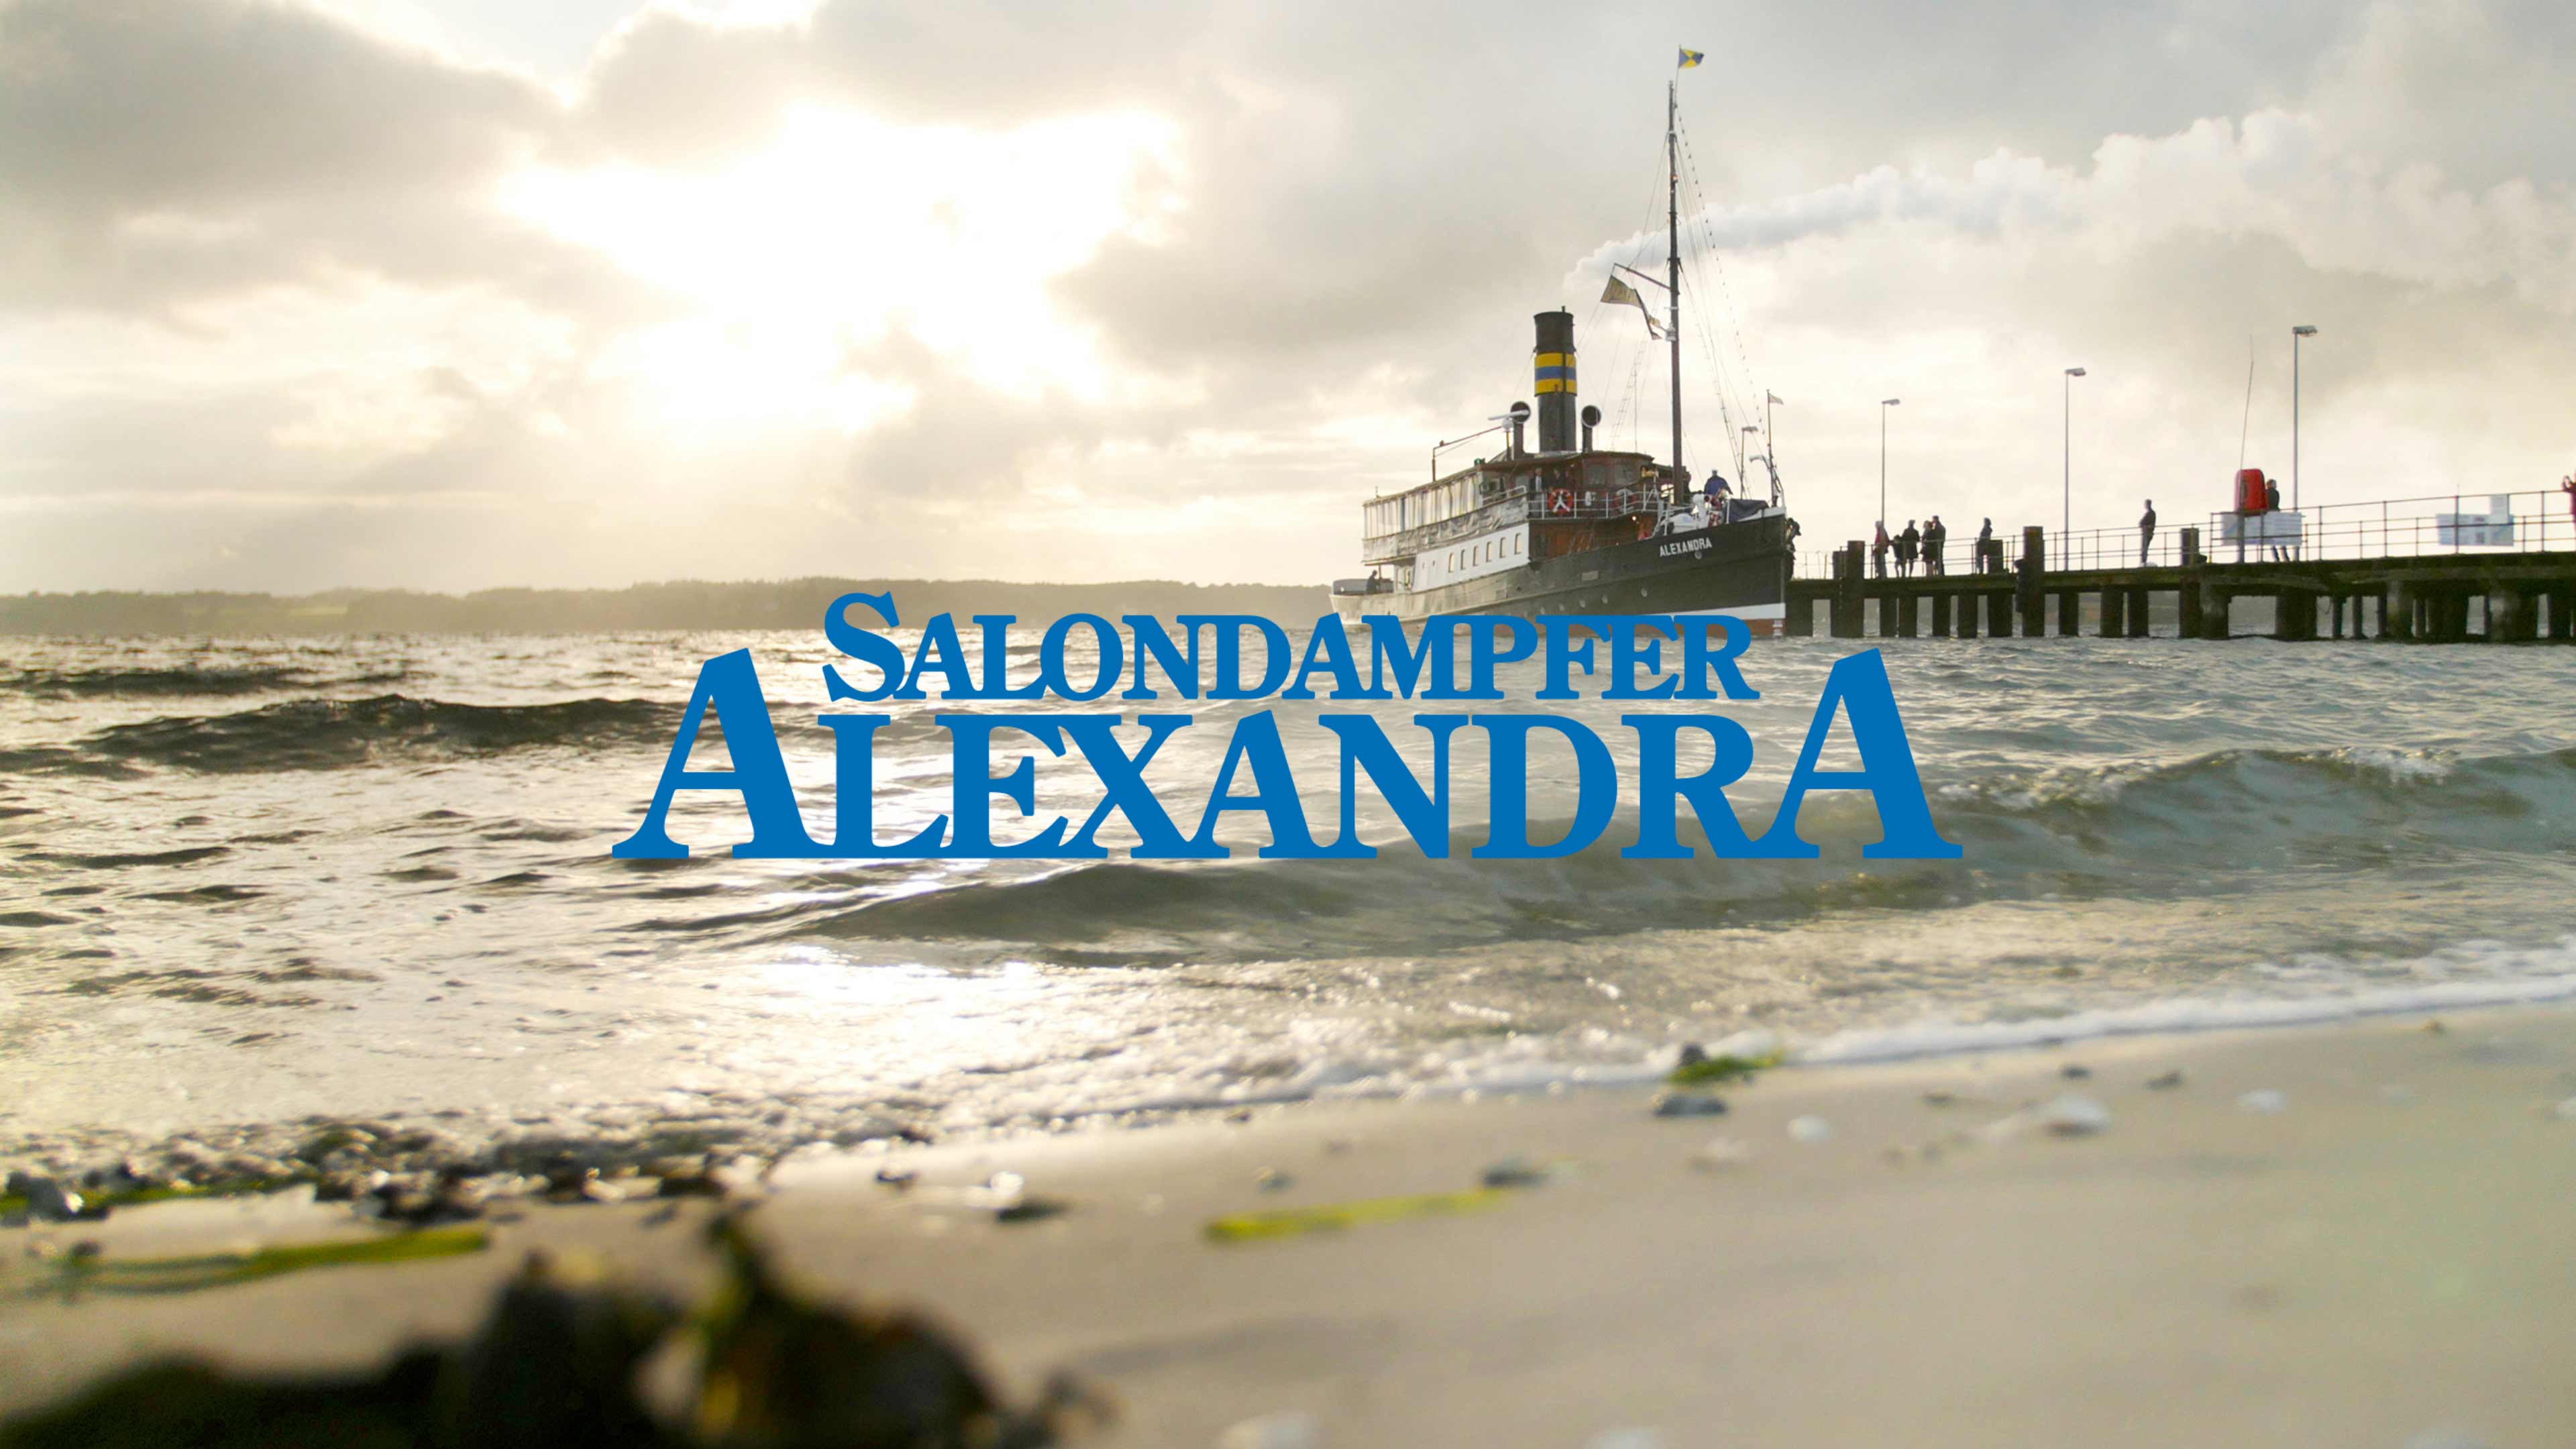 Salondampfer Alexandra legt am Ufer an